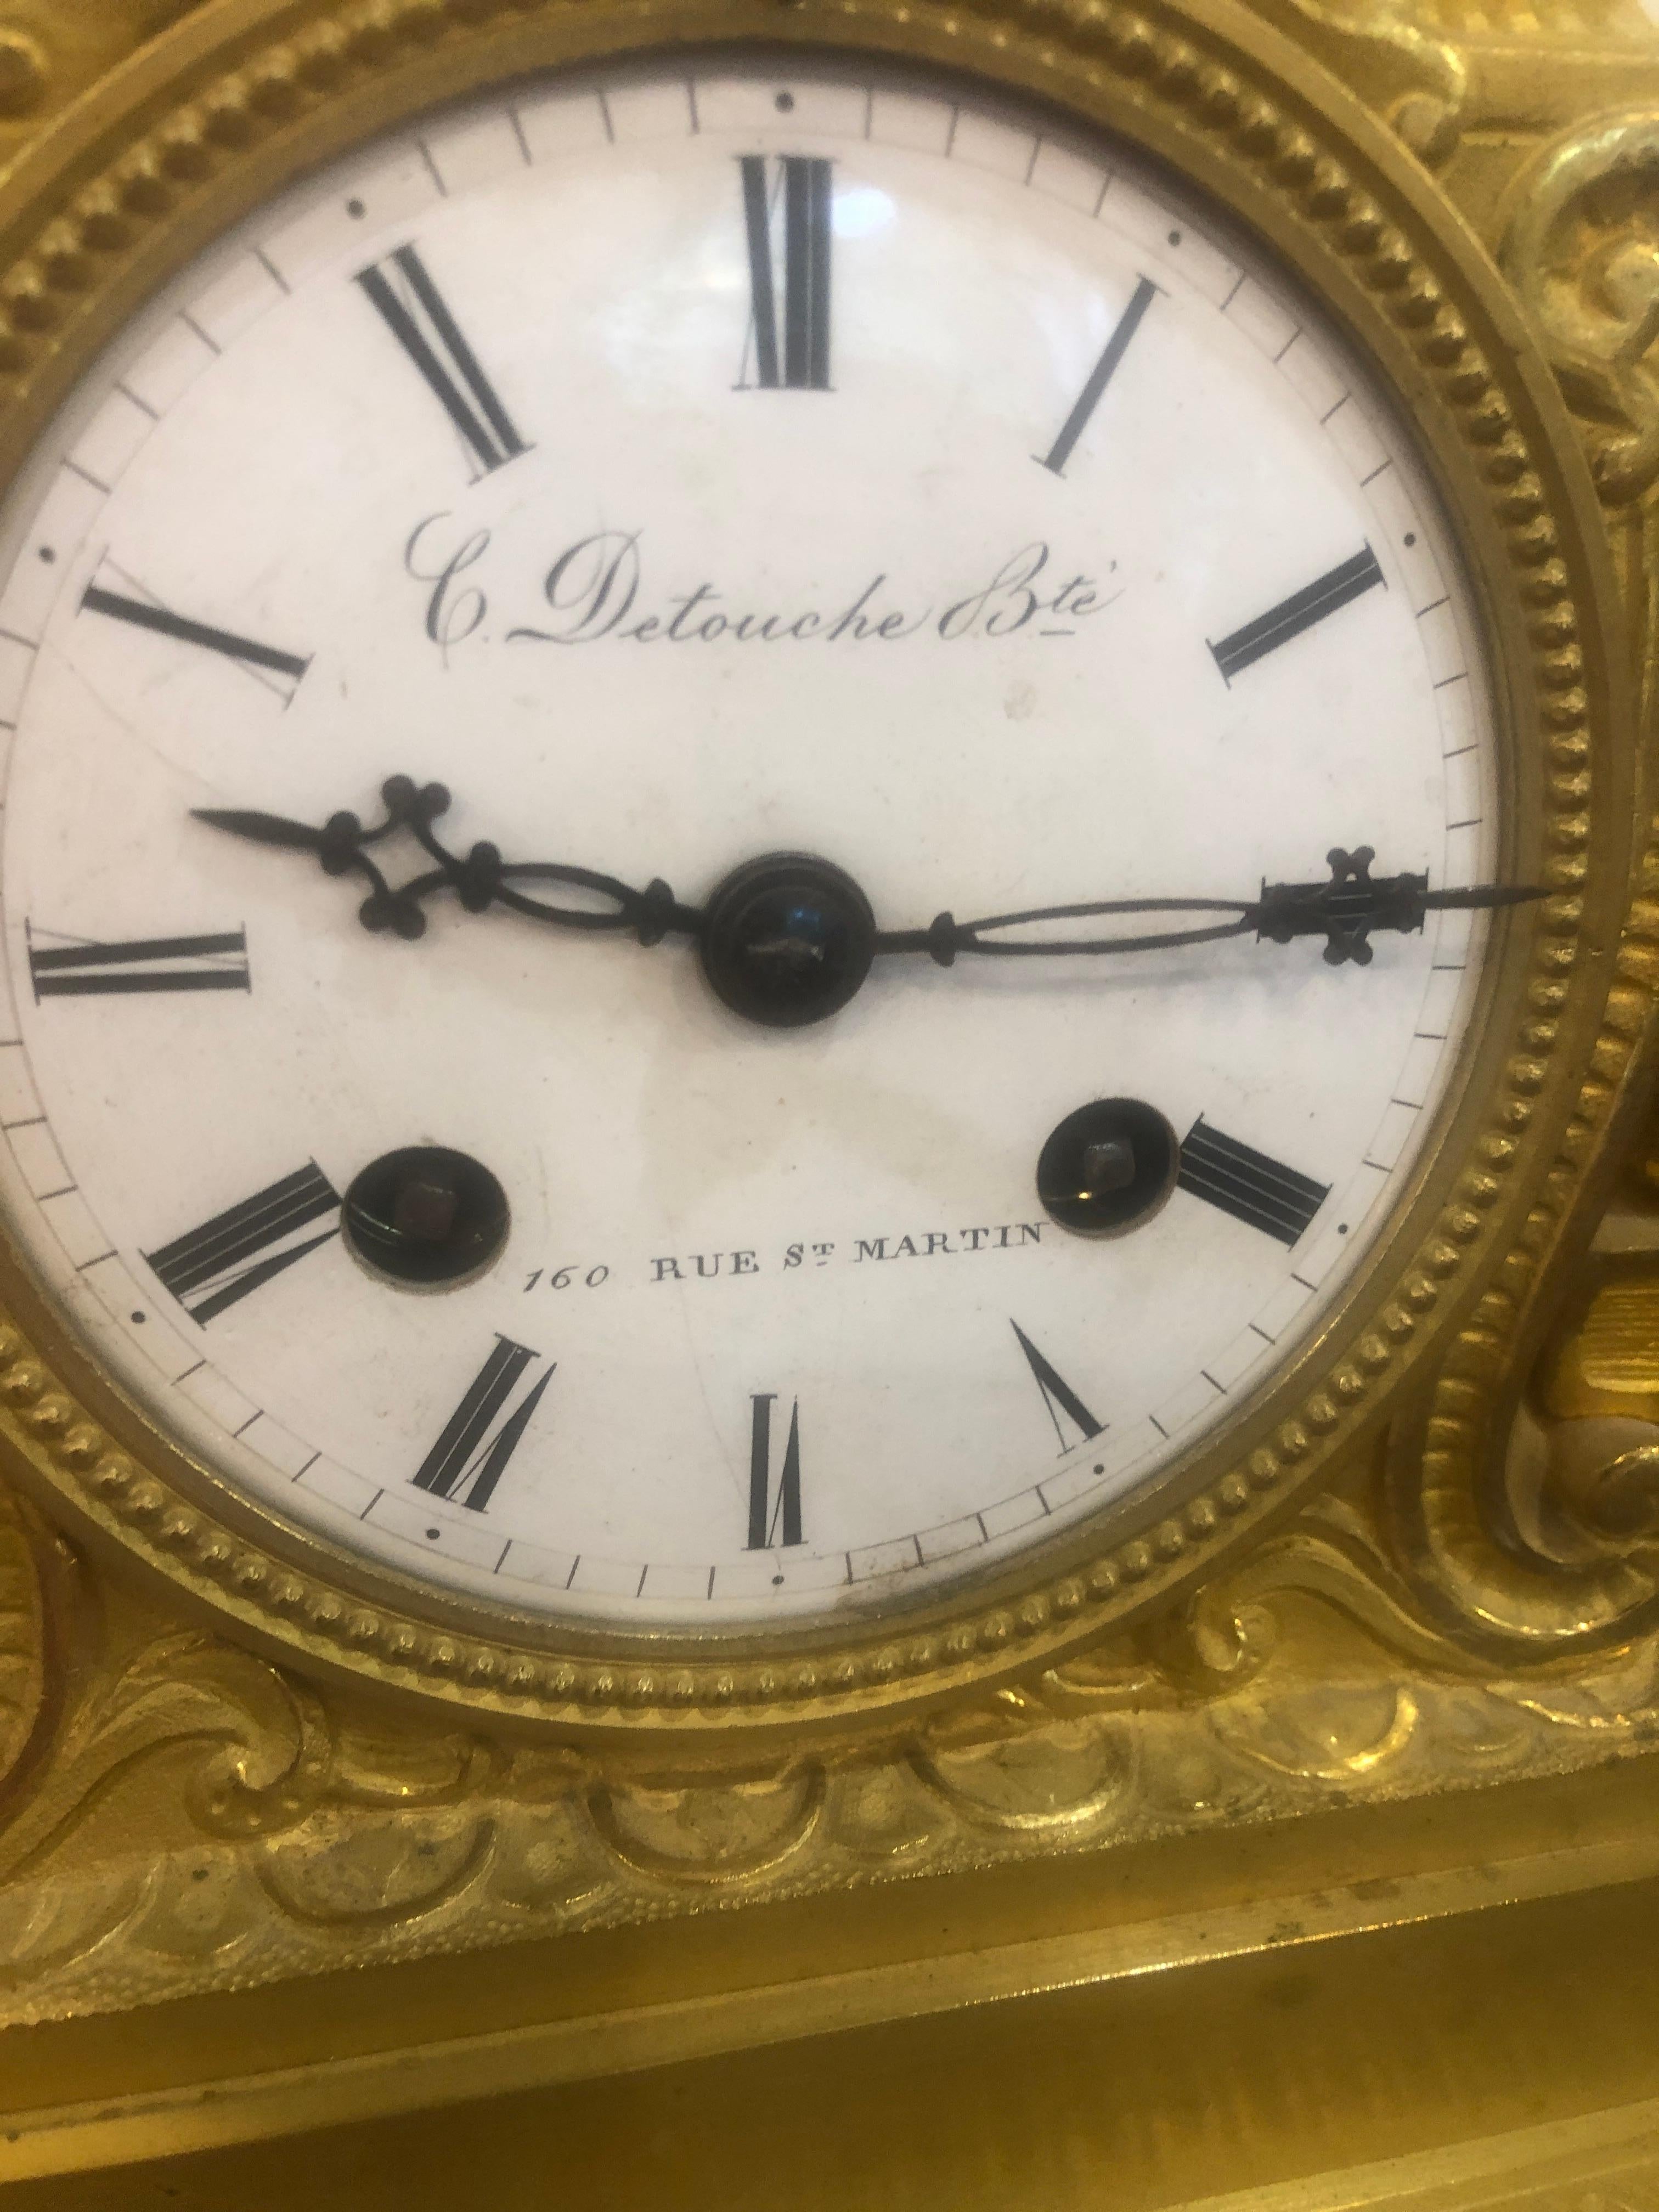 Fantastique et importante horloge de cheminée, signée C. Detouche Bte, 160 Rue. St Martin. Paris, France, vers 1830-1835.

Constantin-Louis Detouche (1810-1889) né à Paris le 10 octobre 1810, il est le fils de l'horloger Georges Detouche. Il a